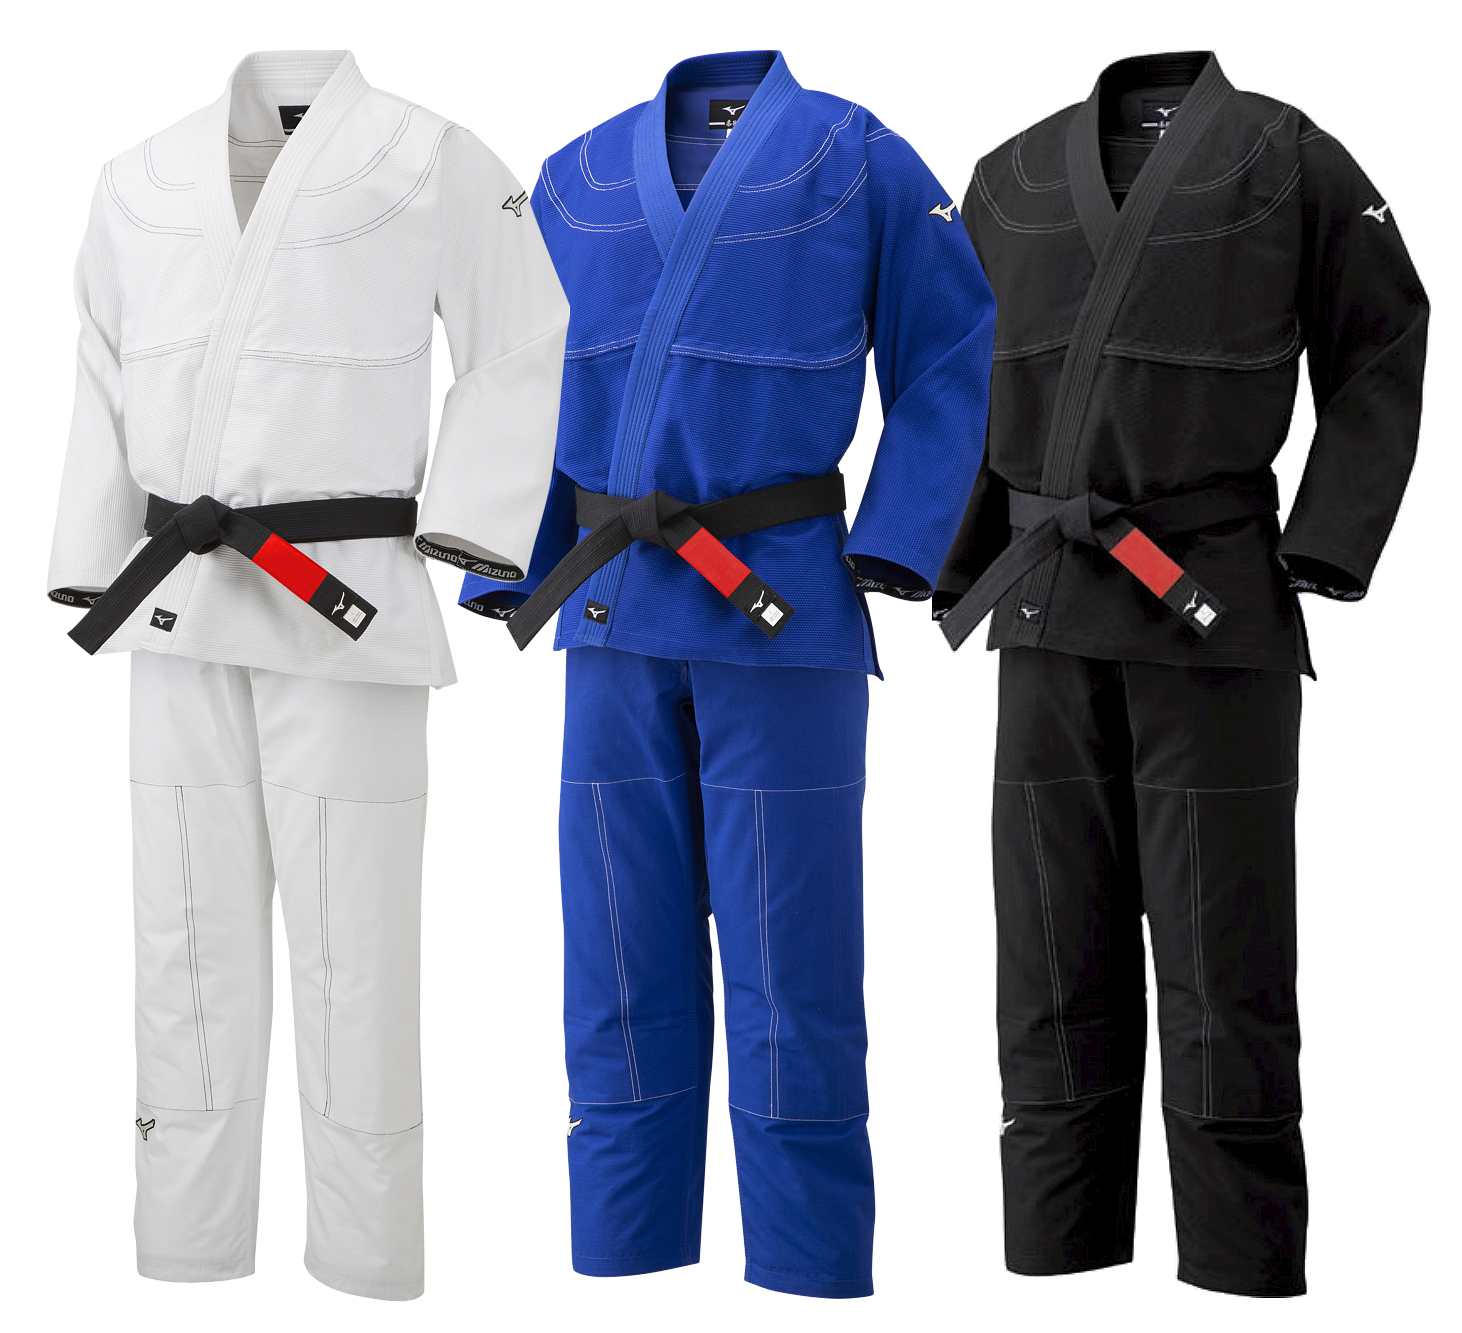 Mizuno Ju-Jitsu Gi, white, blue or black